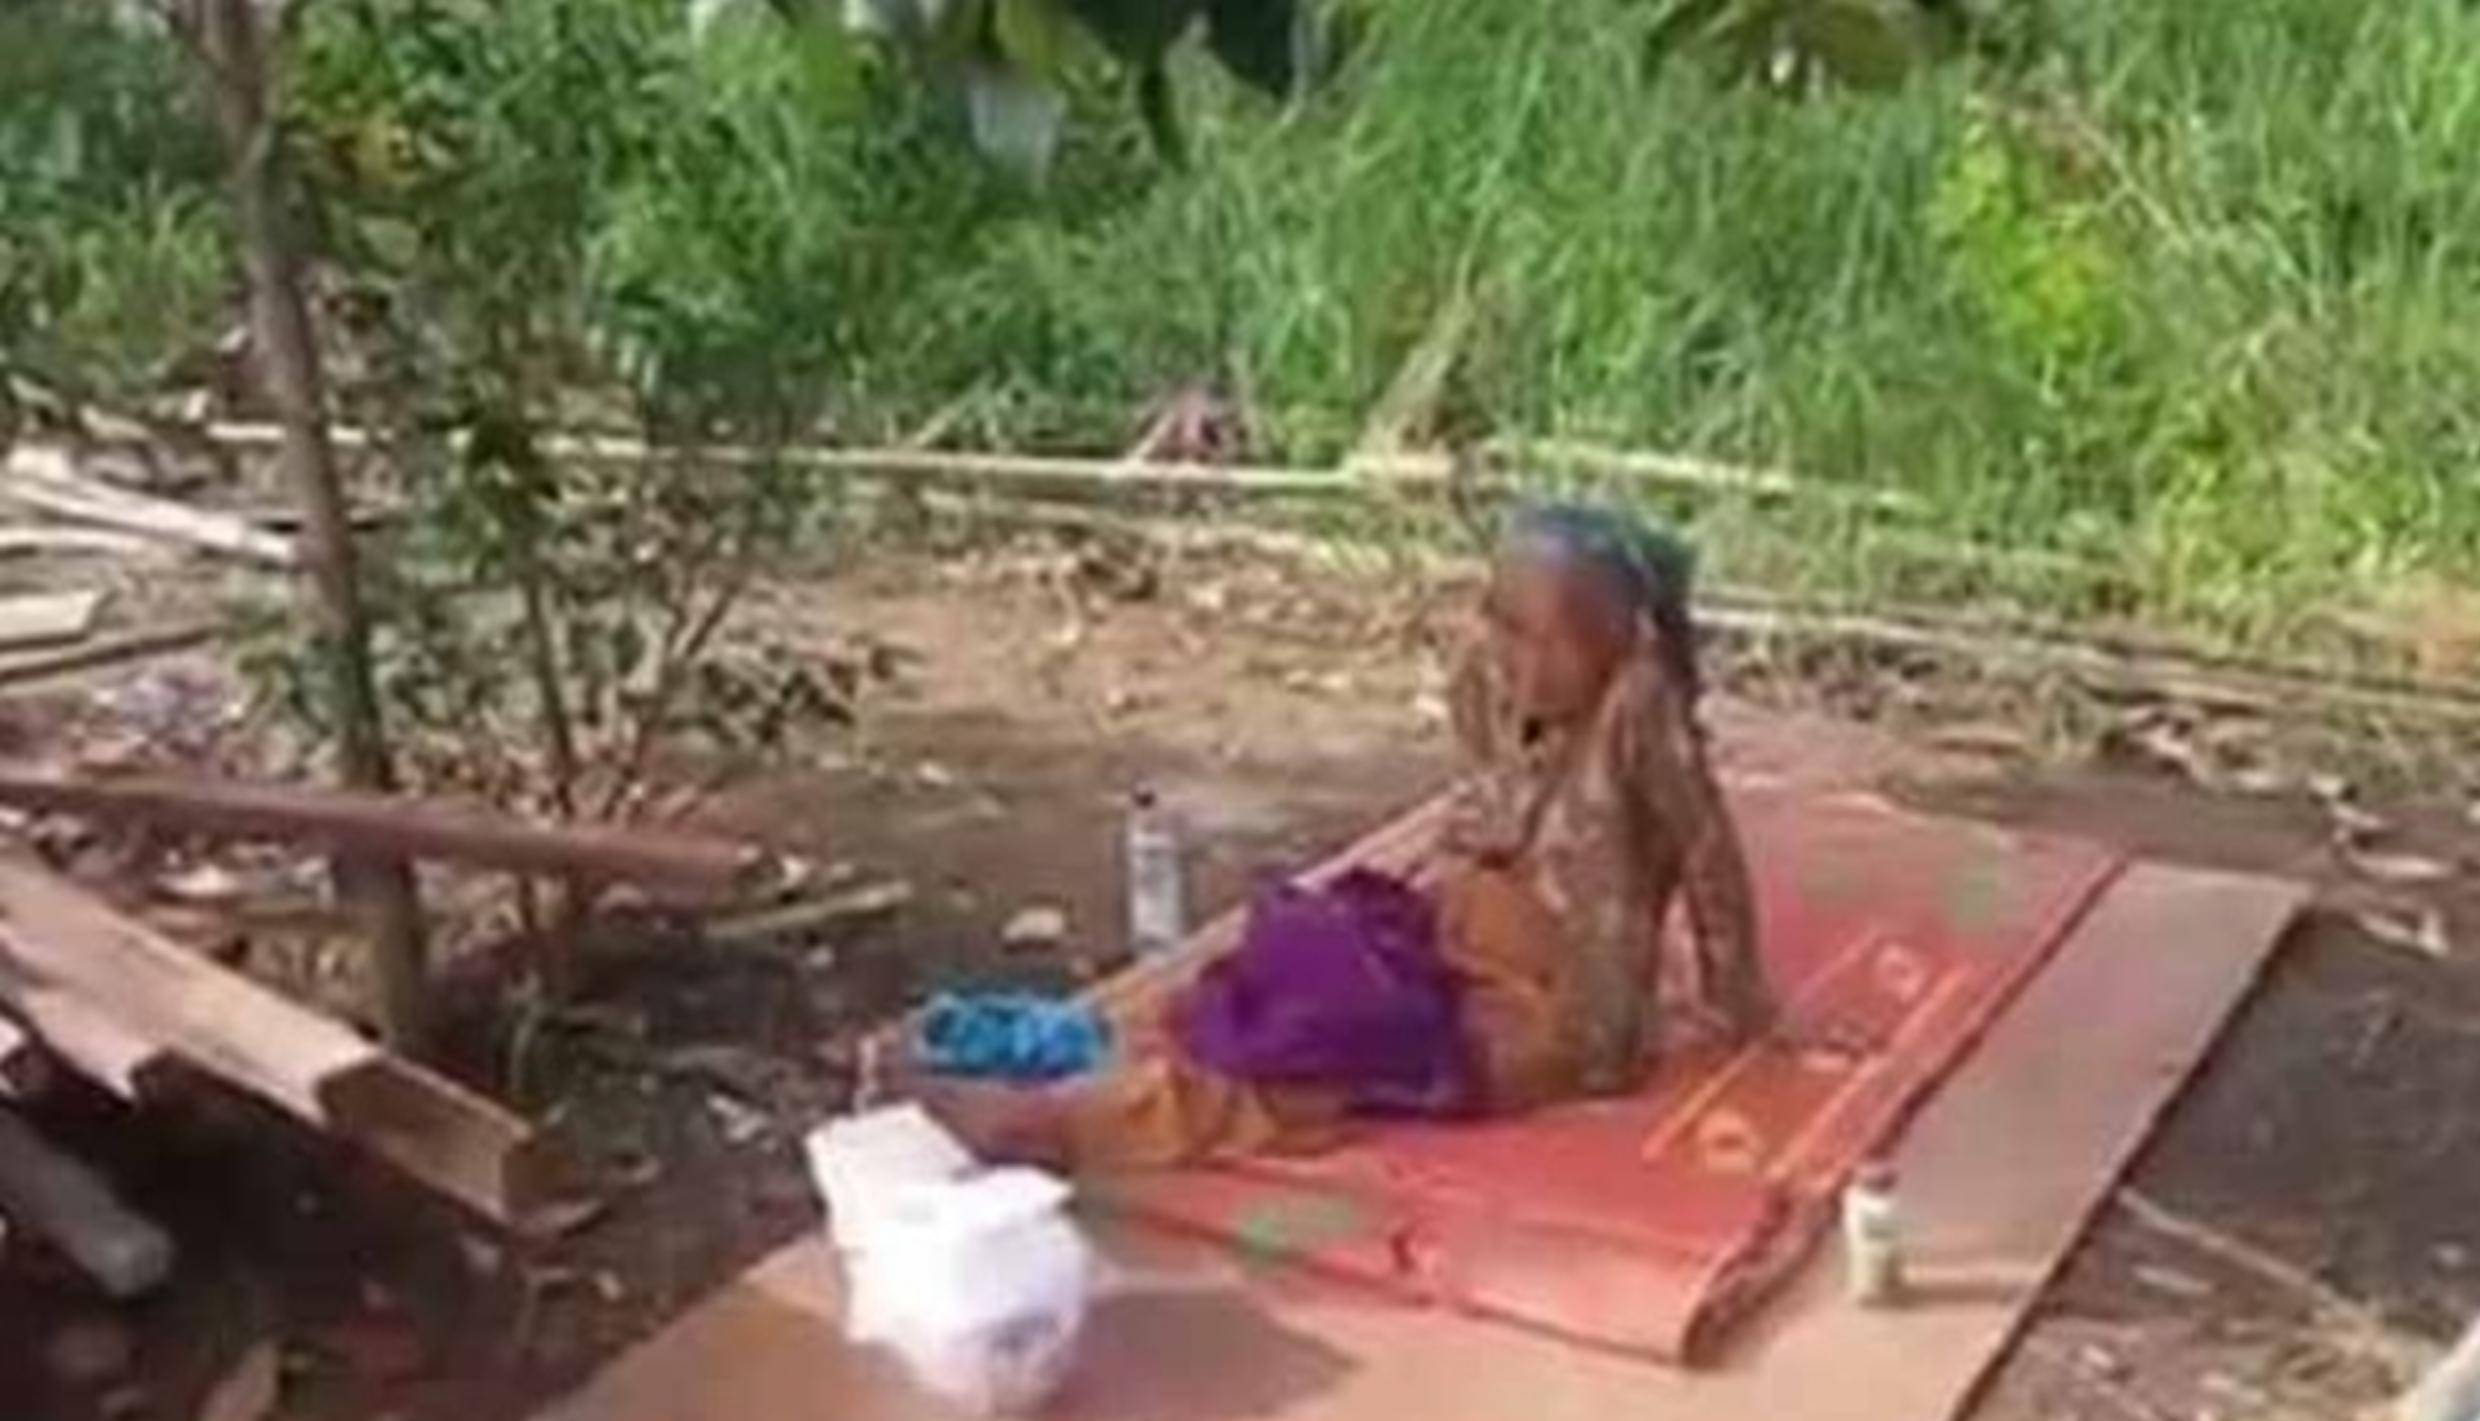 Rumah Dijual Anak untuk Modal Nikah, Nenek 90 Tahun Ini Dievakuasi ke Panti Jompo